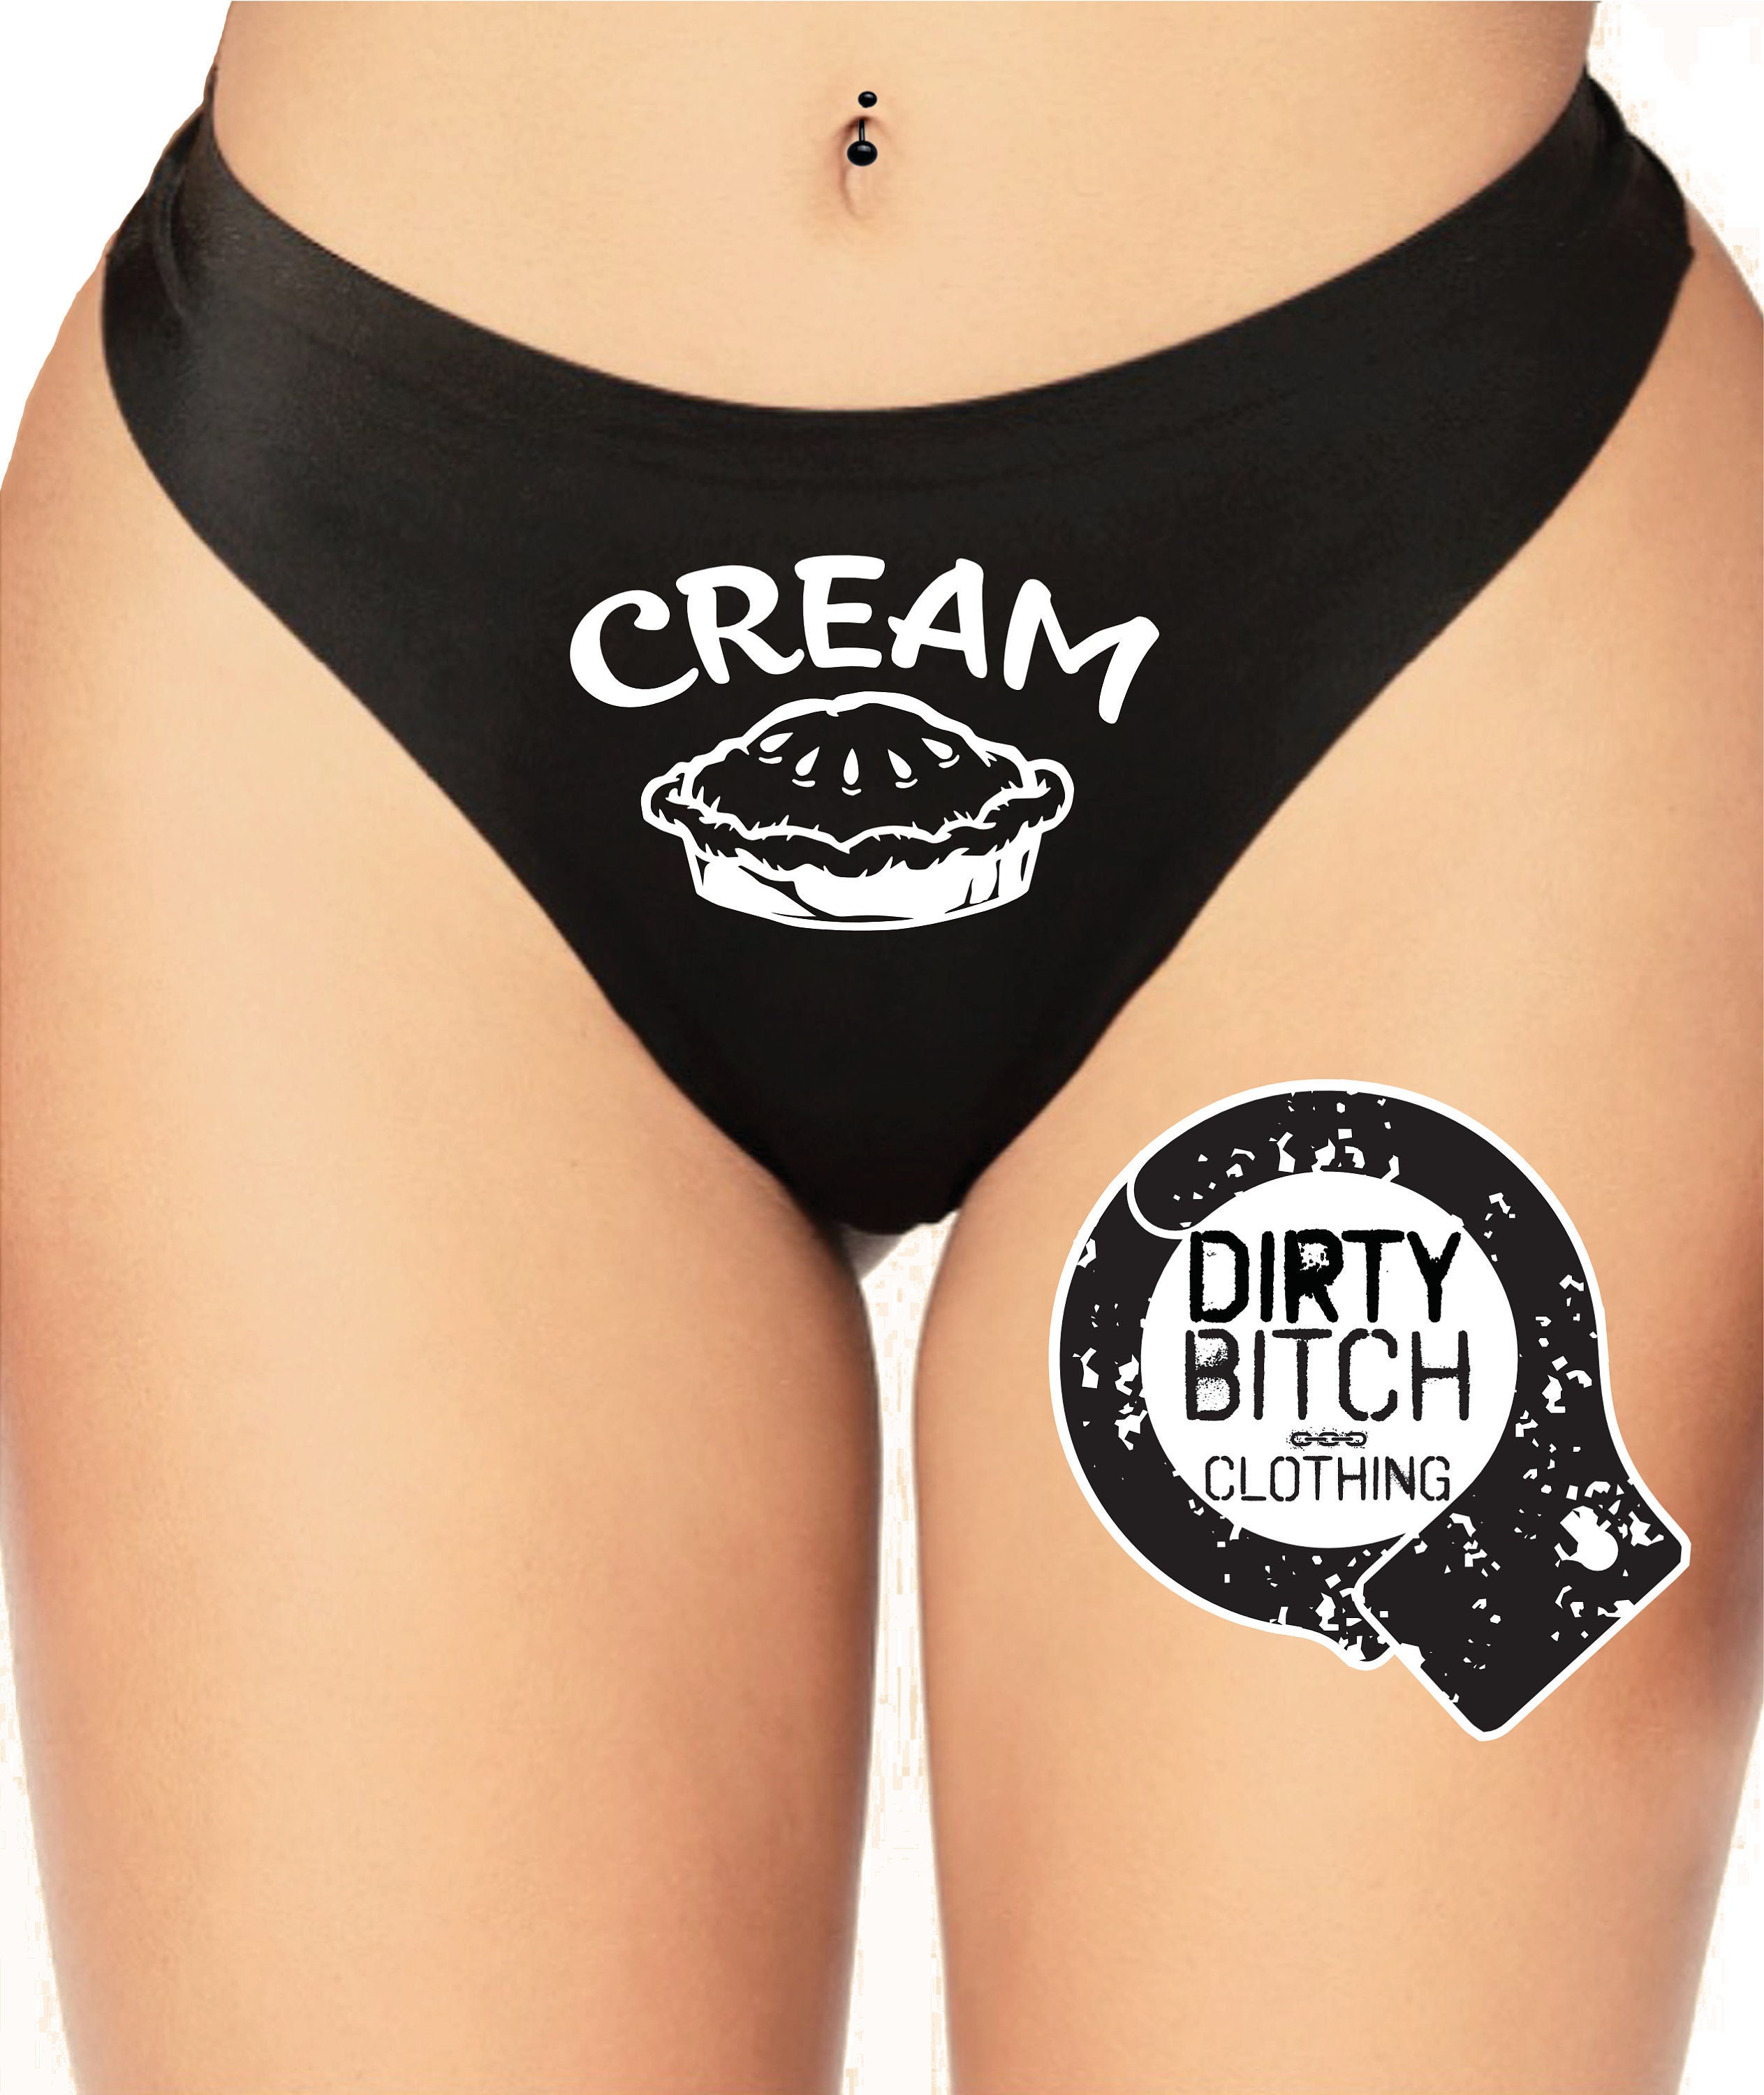 Logotipo de Cream Pie bragas para adultos fetiche hotwife imagen foto